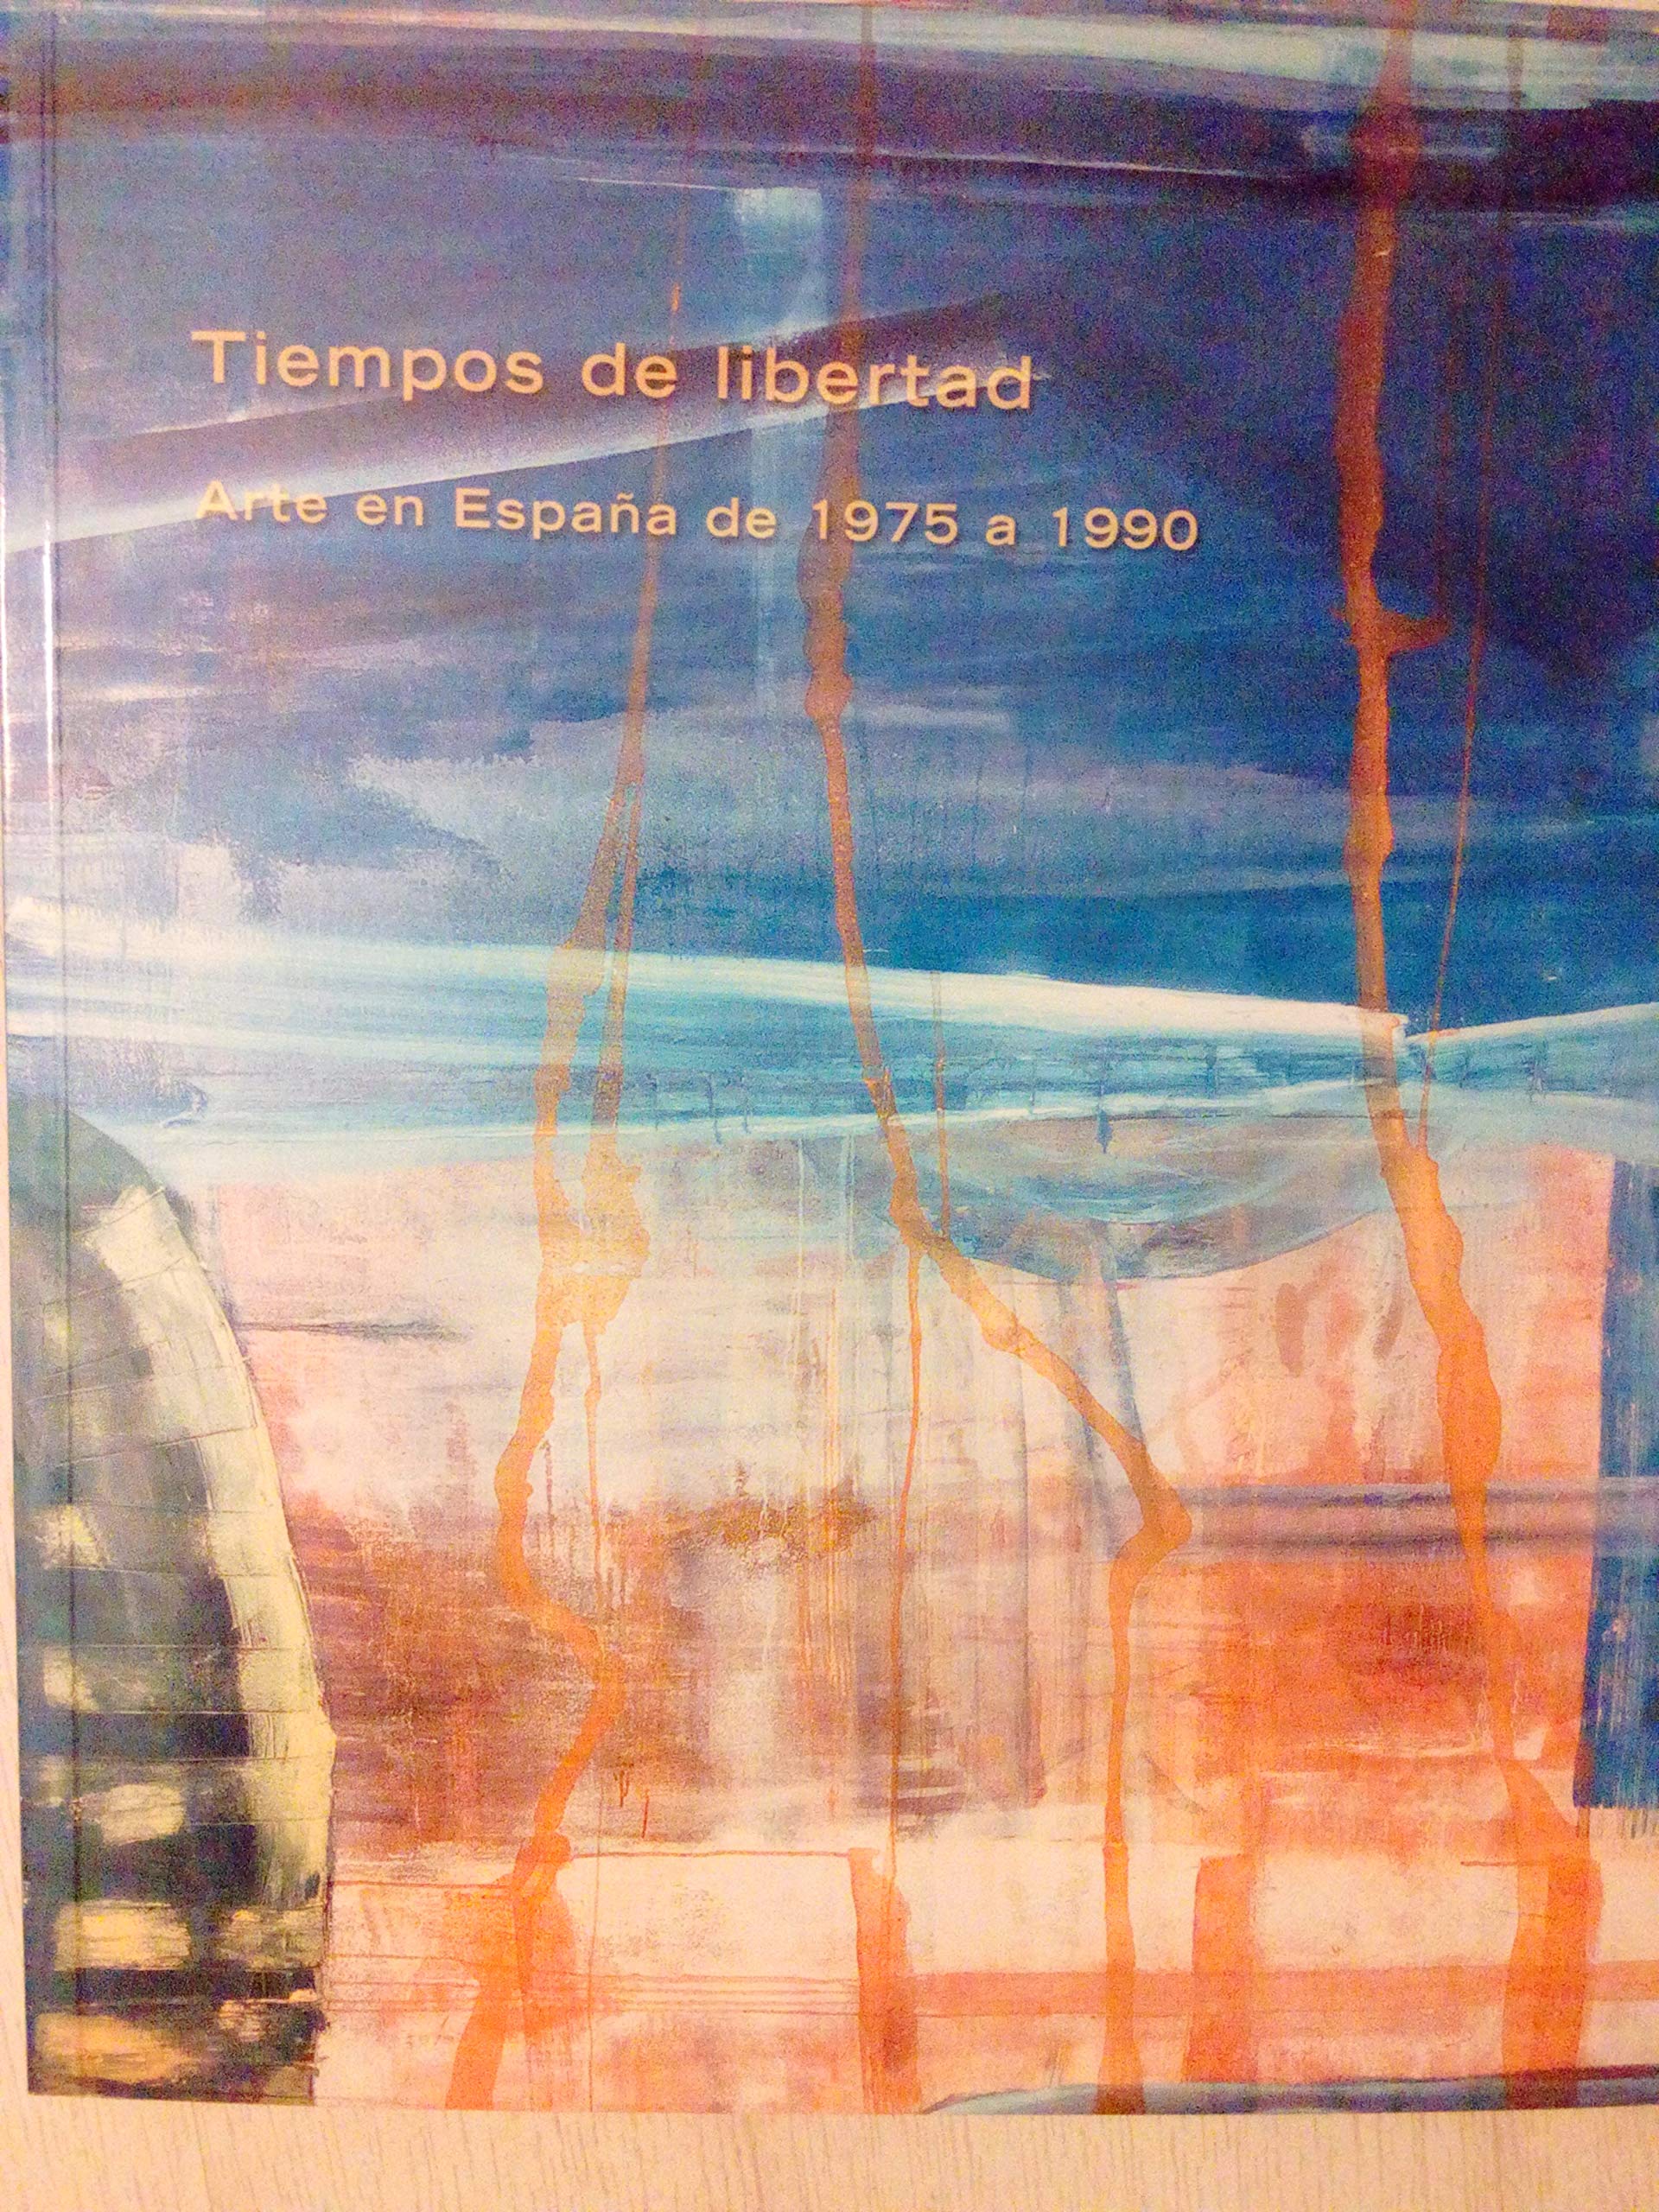 Imagen de portada del libro Tiempos de libertad